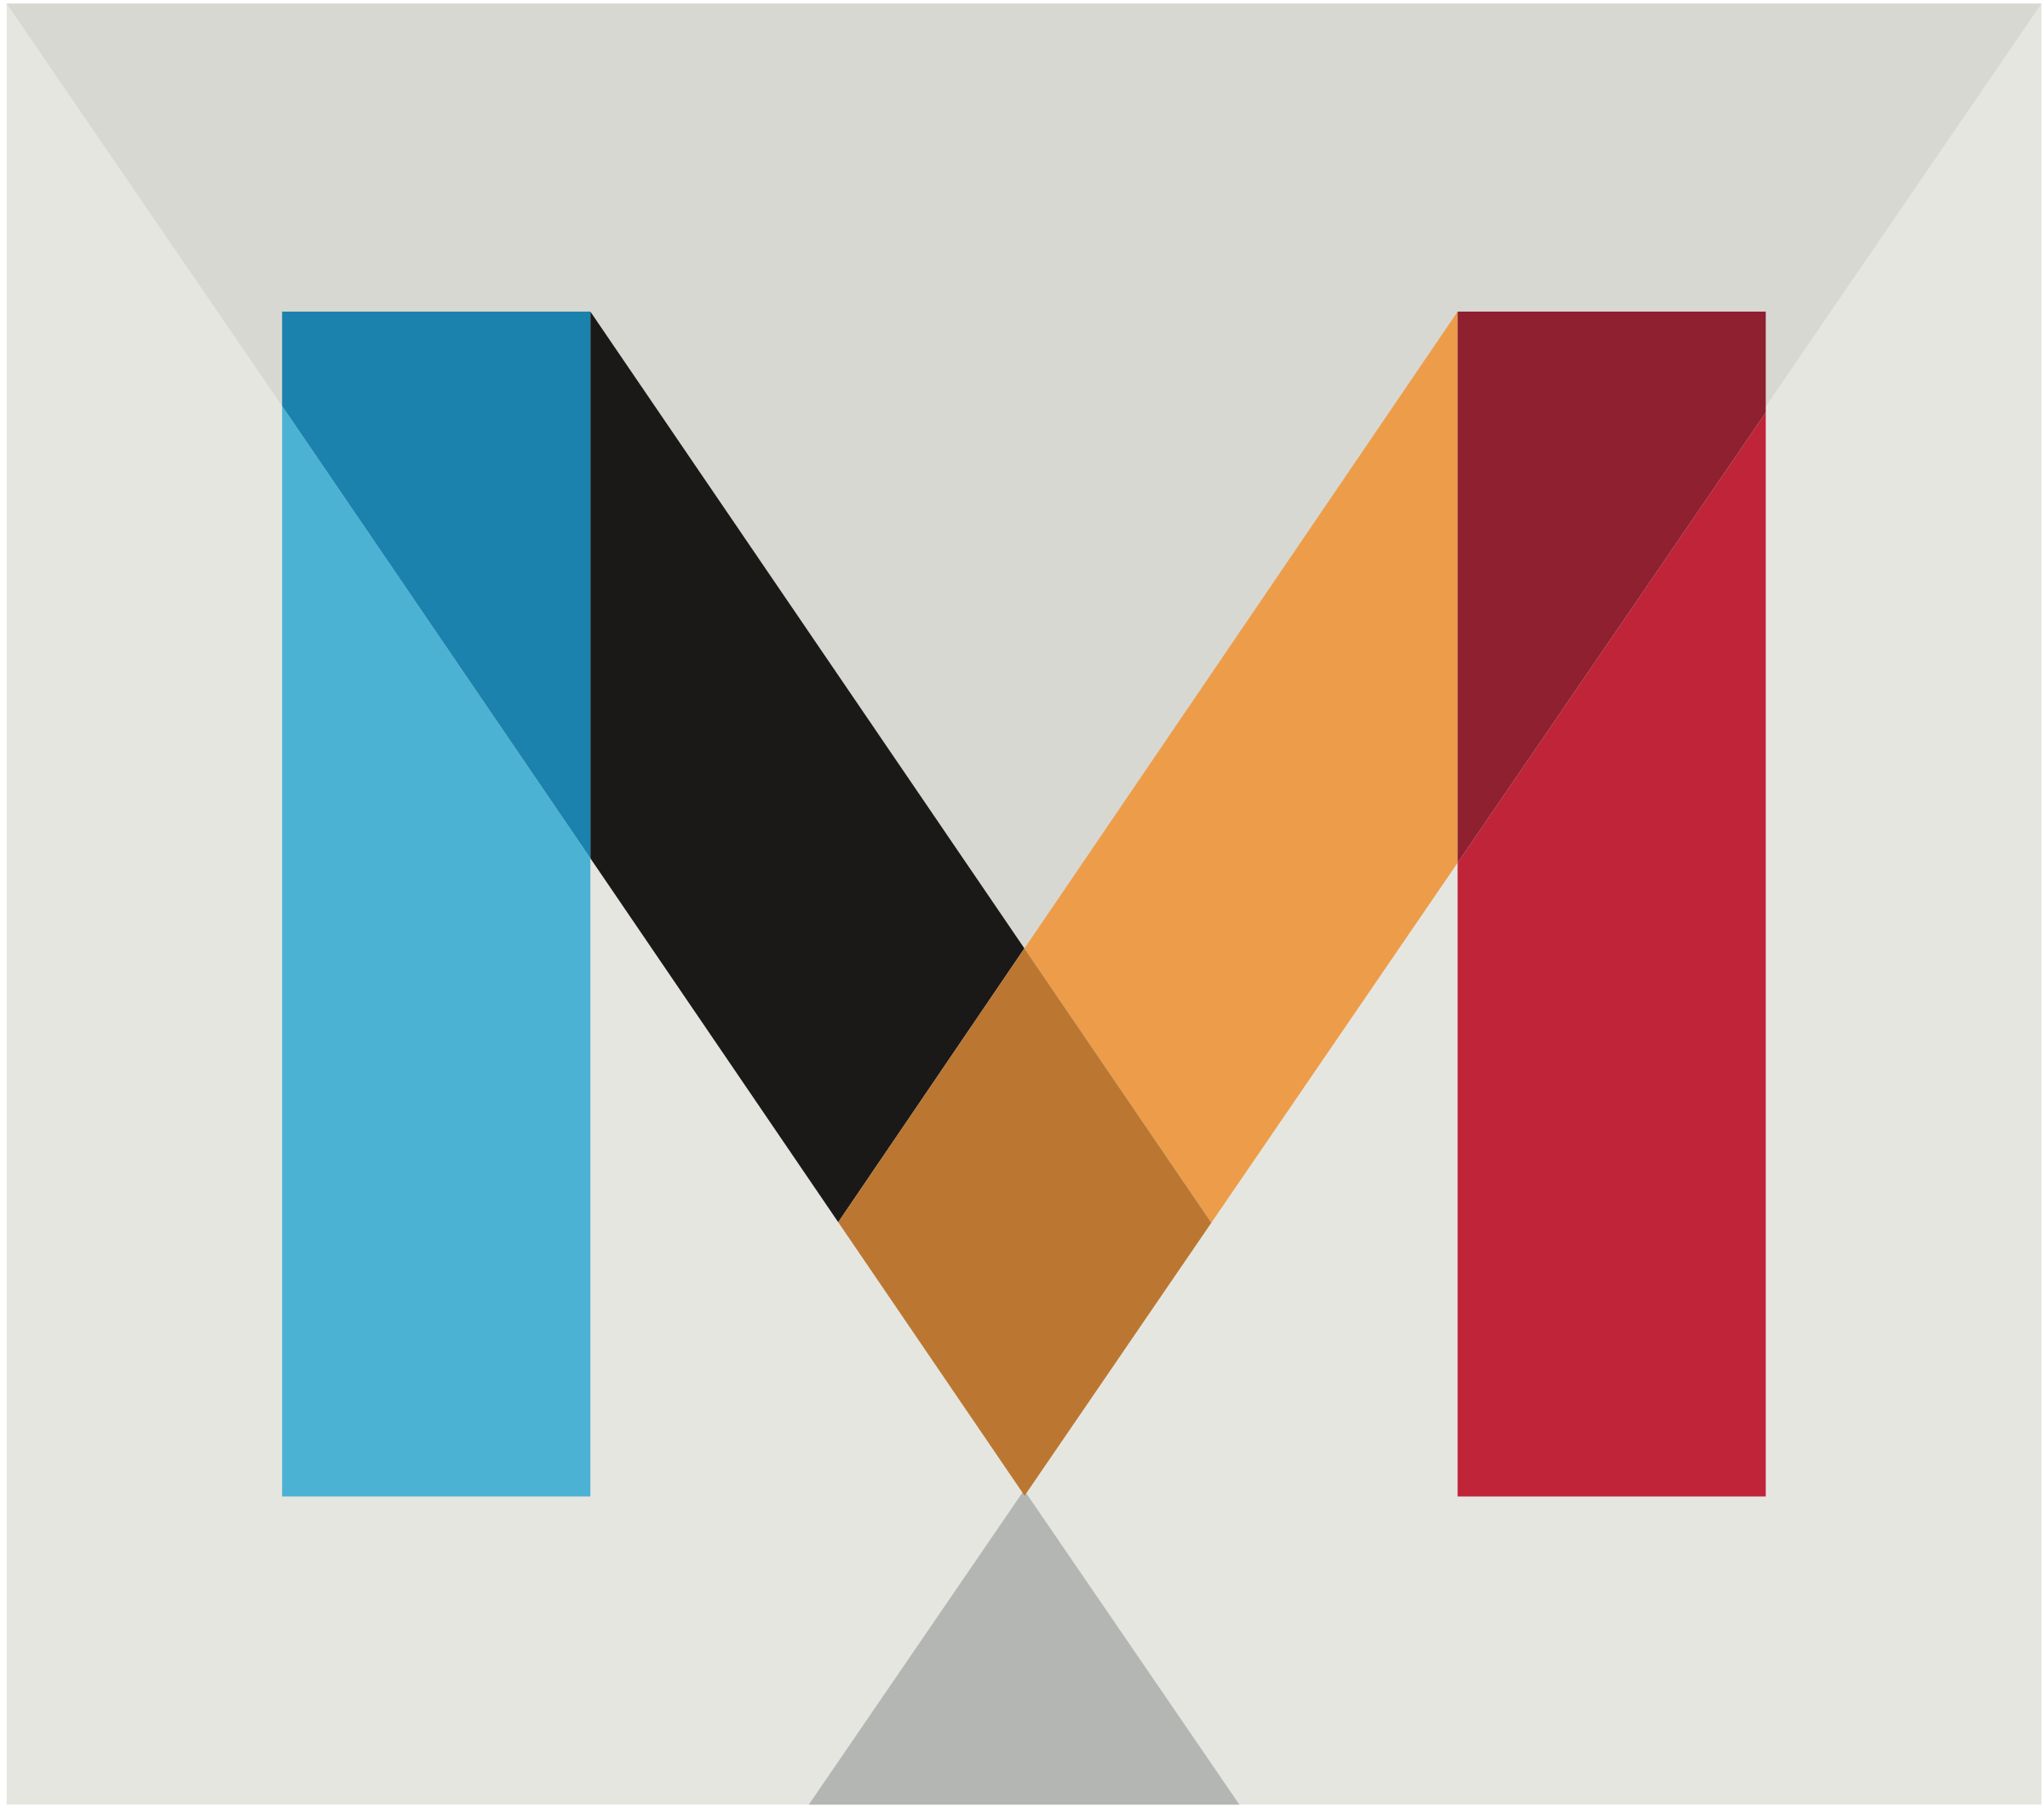 Mandrill Logo - Mandrill Logo PNG Transparent & SVG Vector